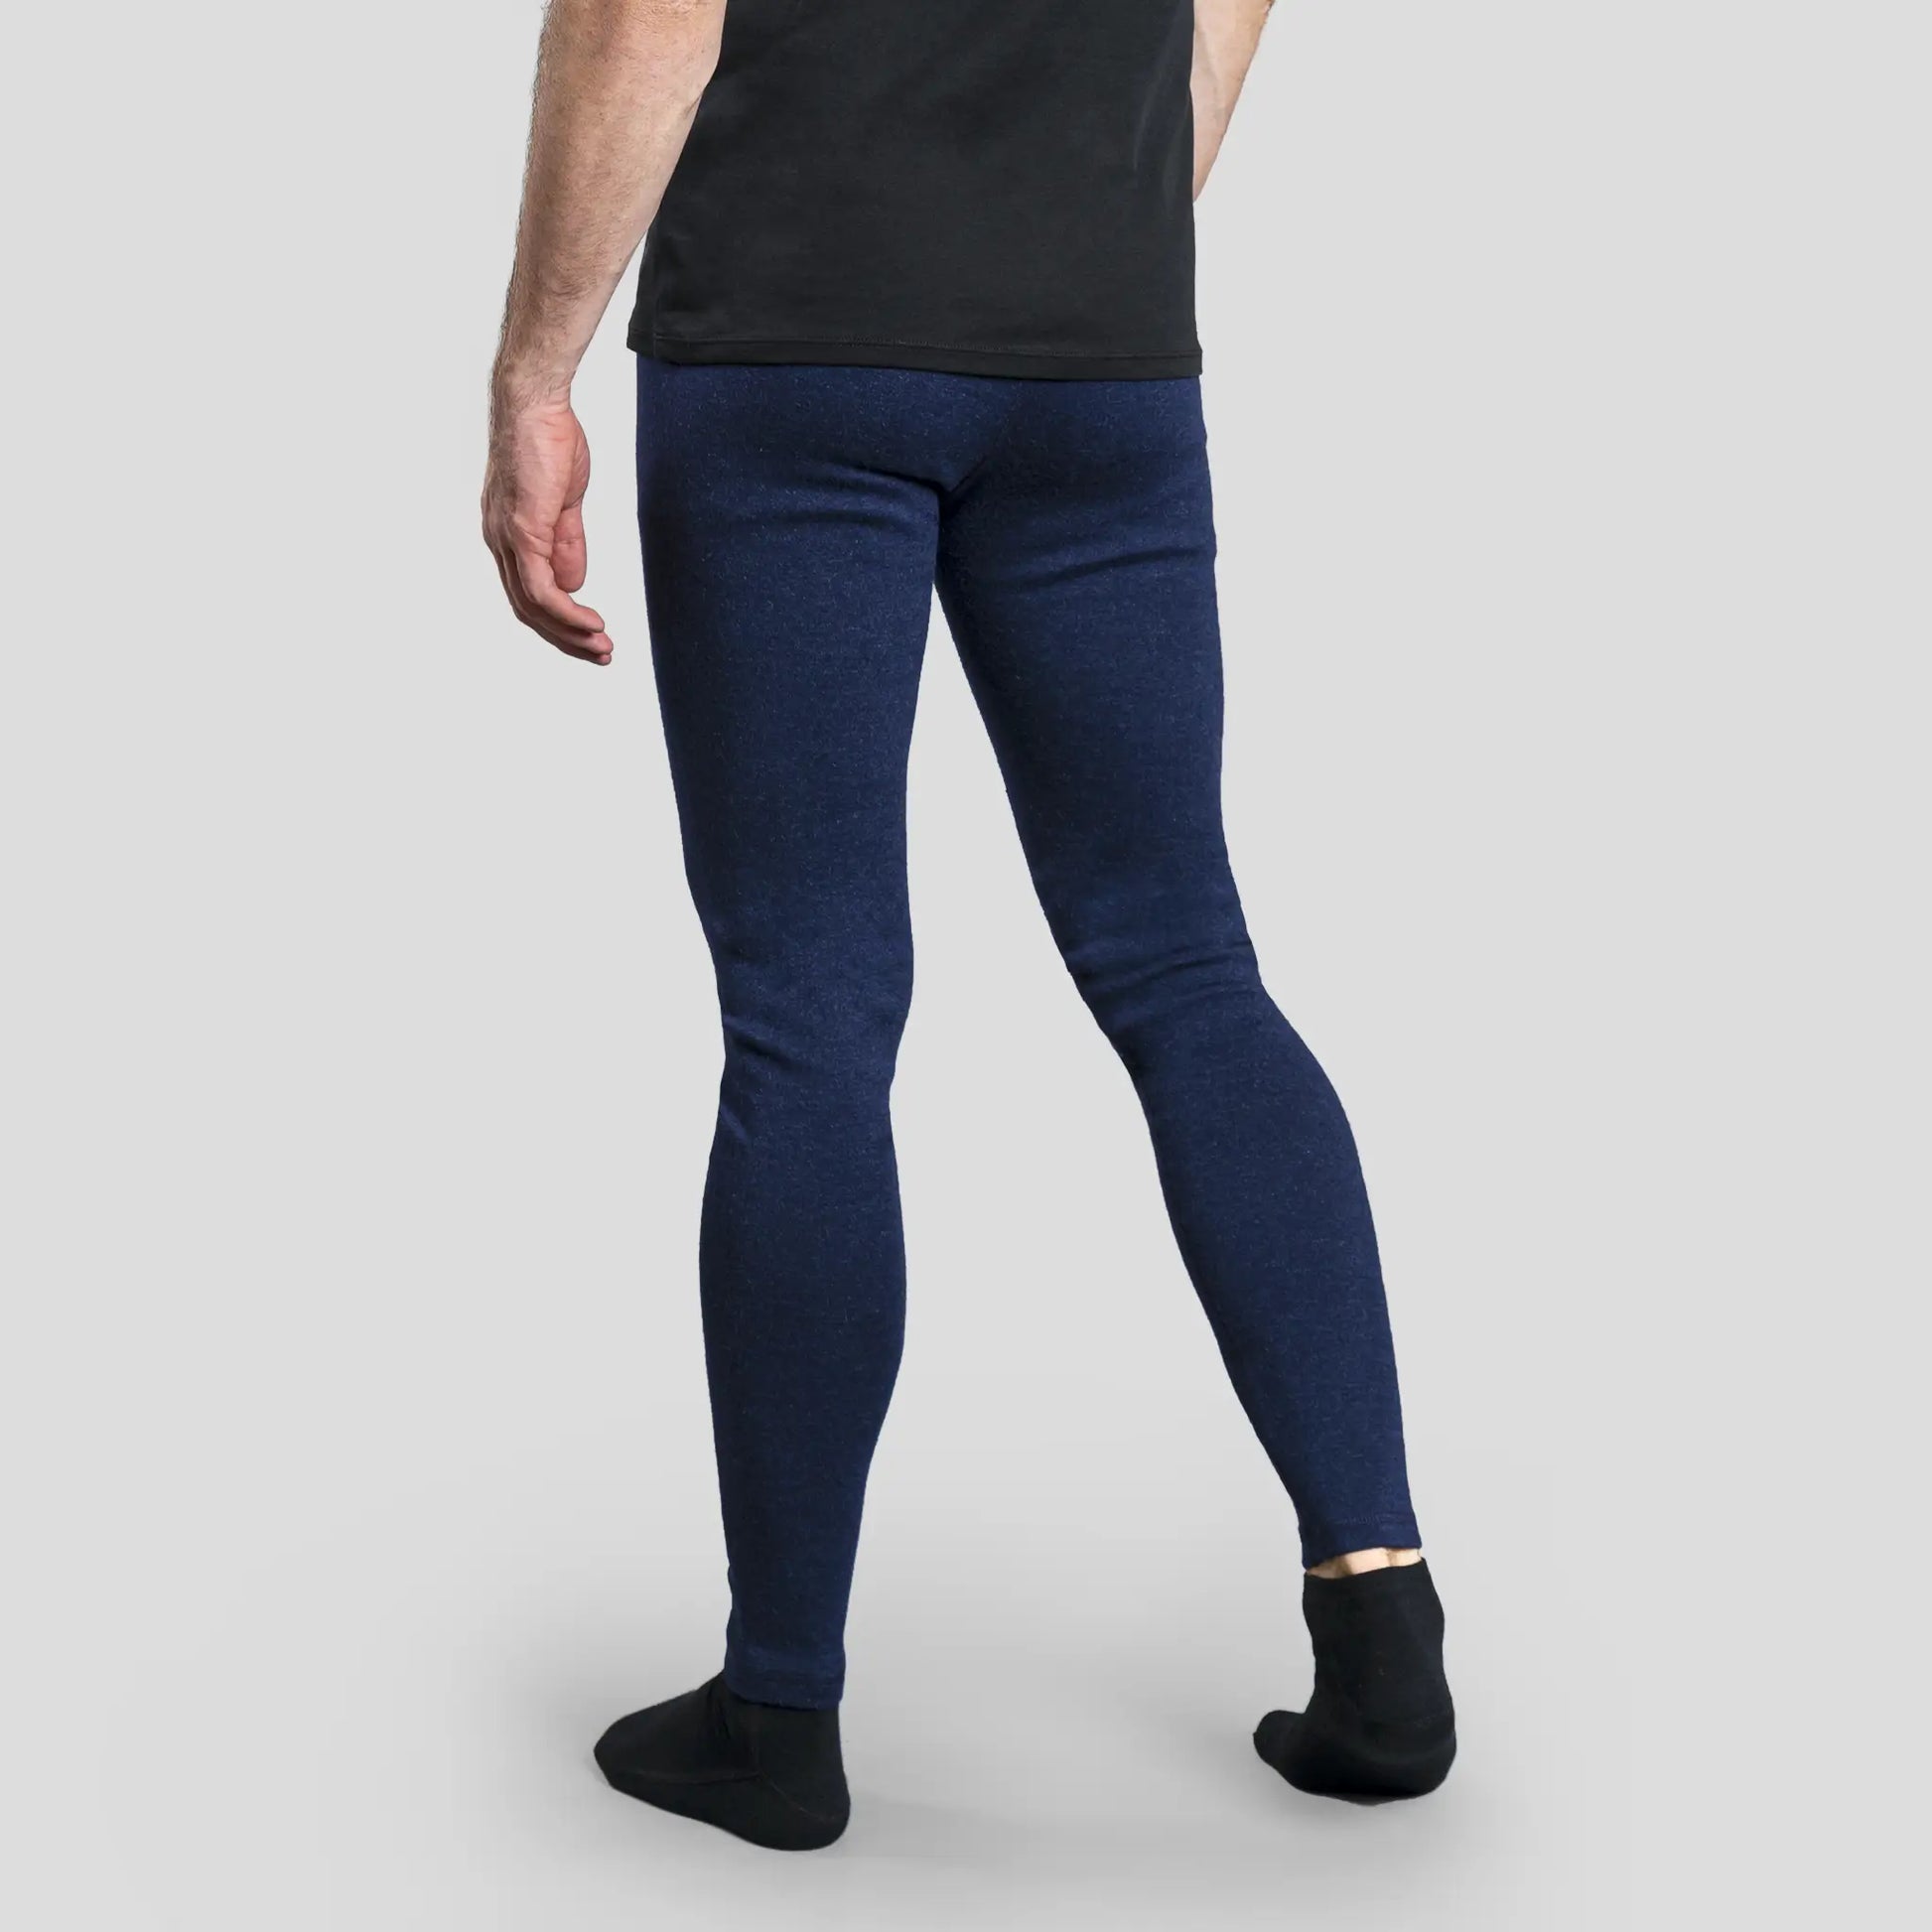 Men's Alpaca Wool Leggings: 420 Midweight color Navy Blue